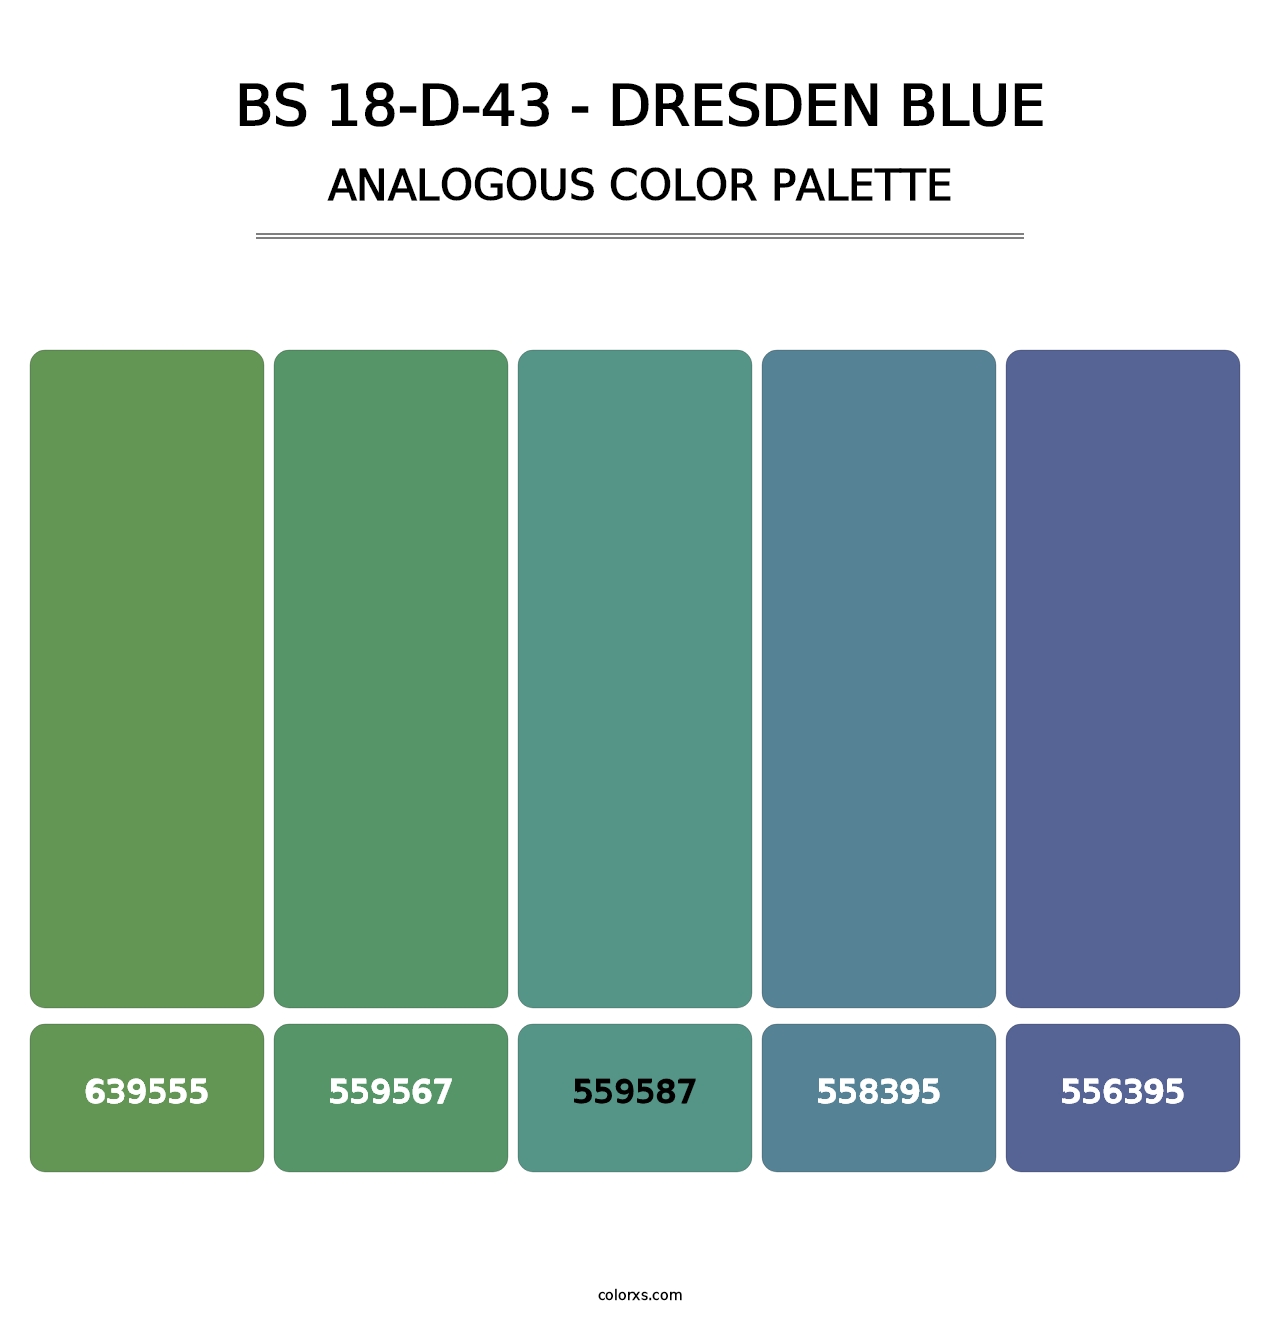 BS 18-D-43 - Dresden Blue - Analogous Color Palette